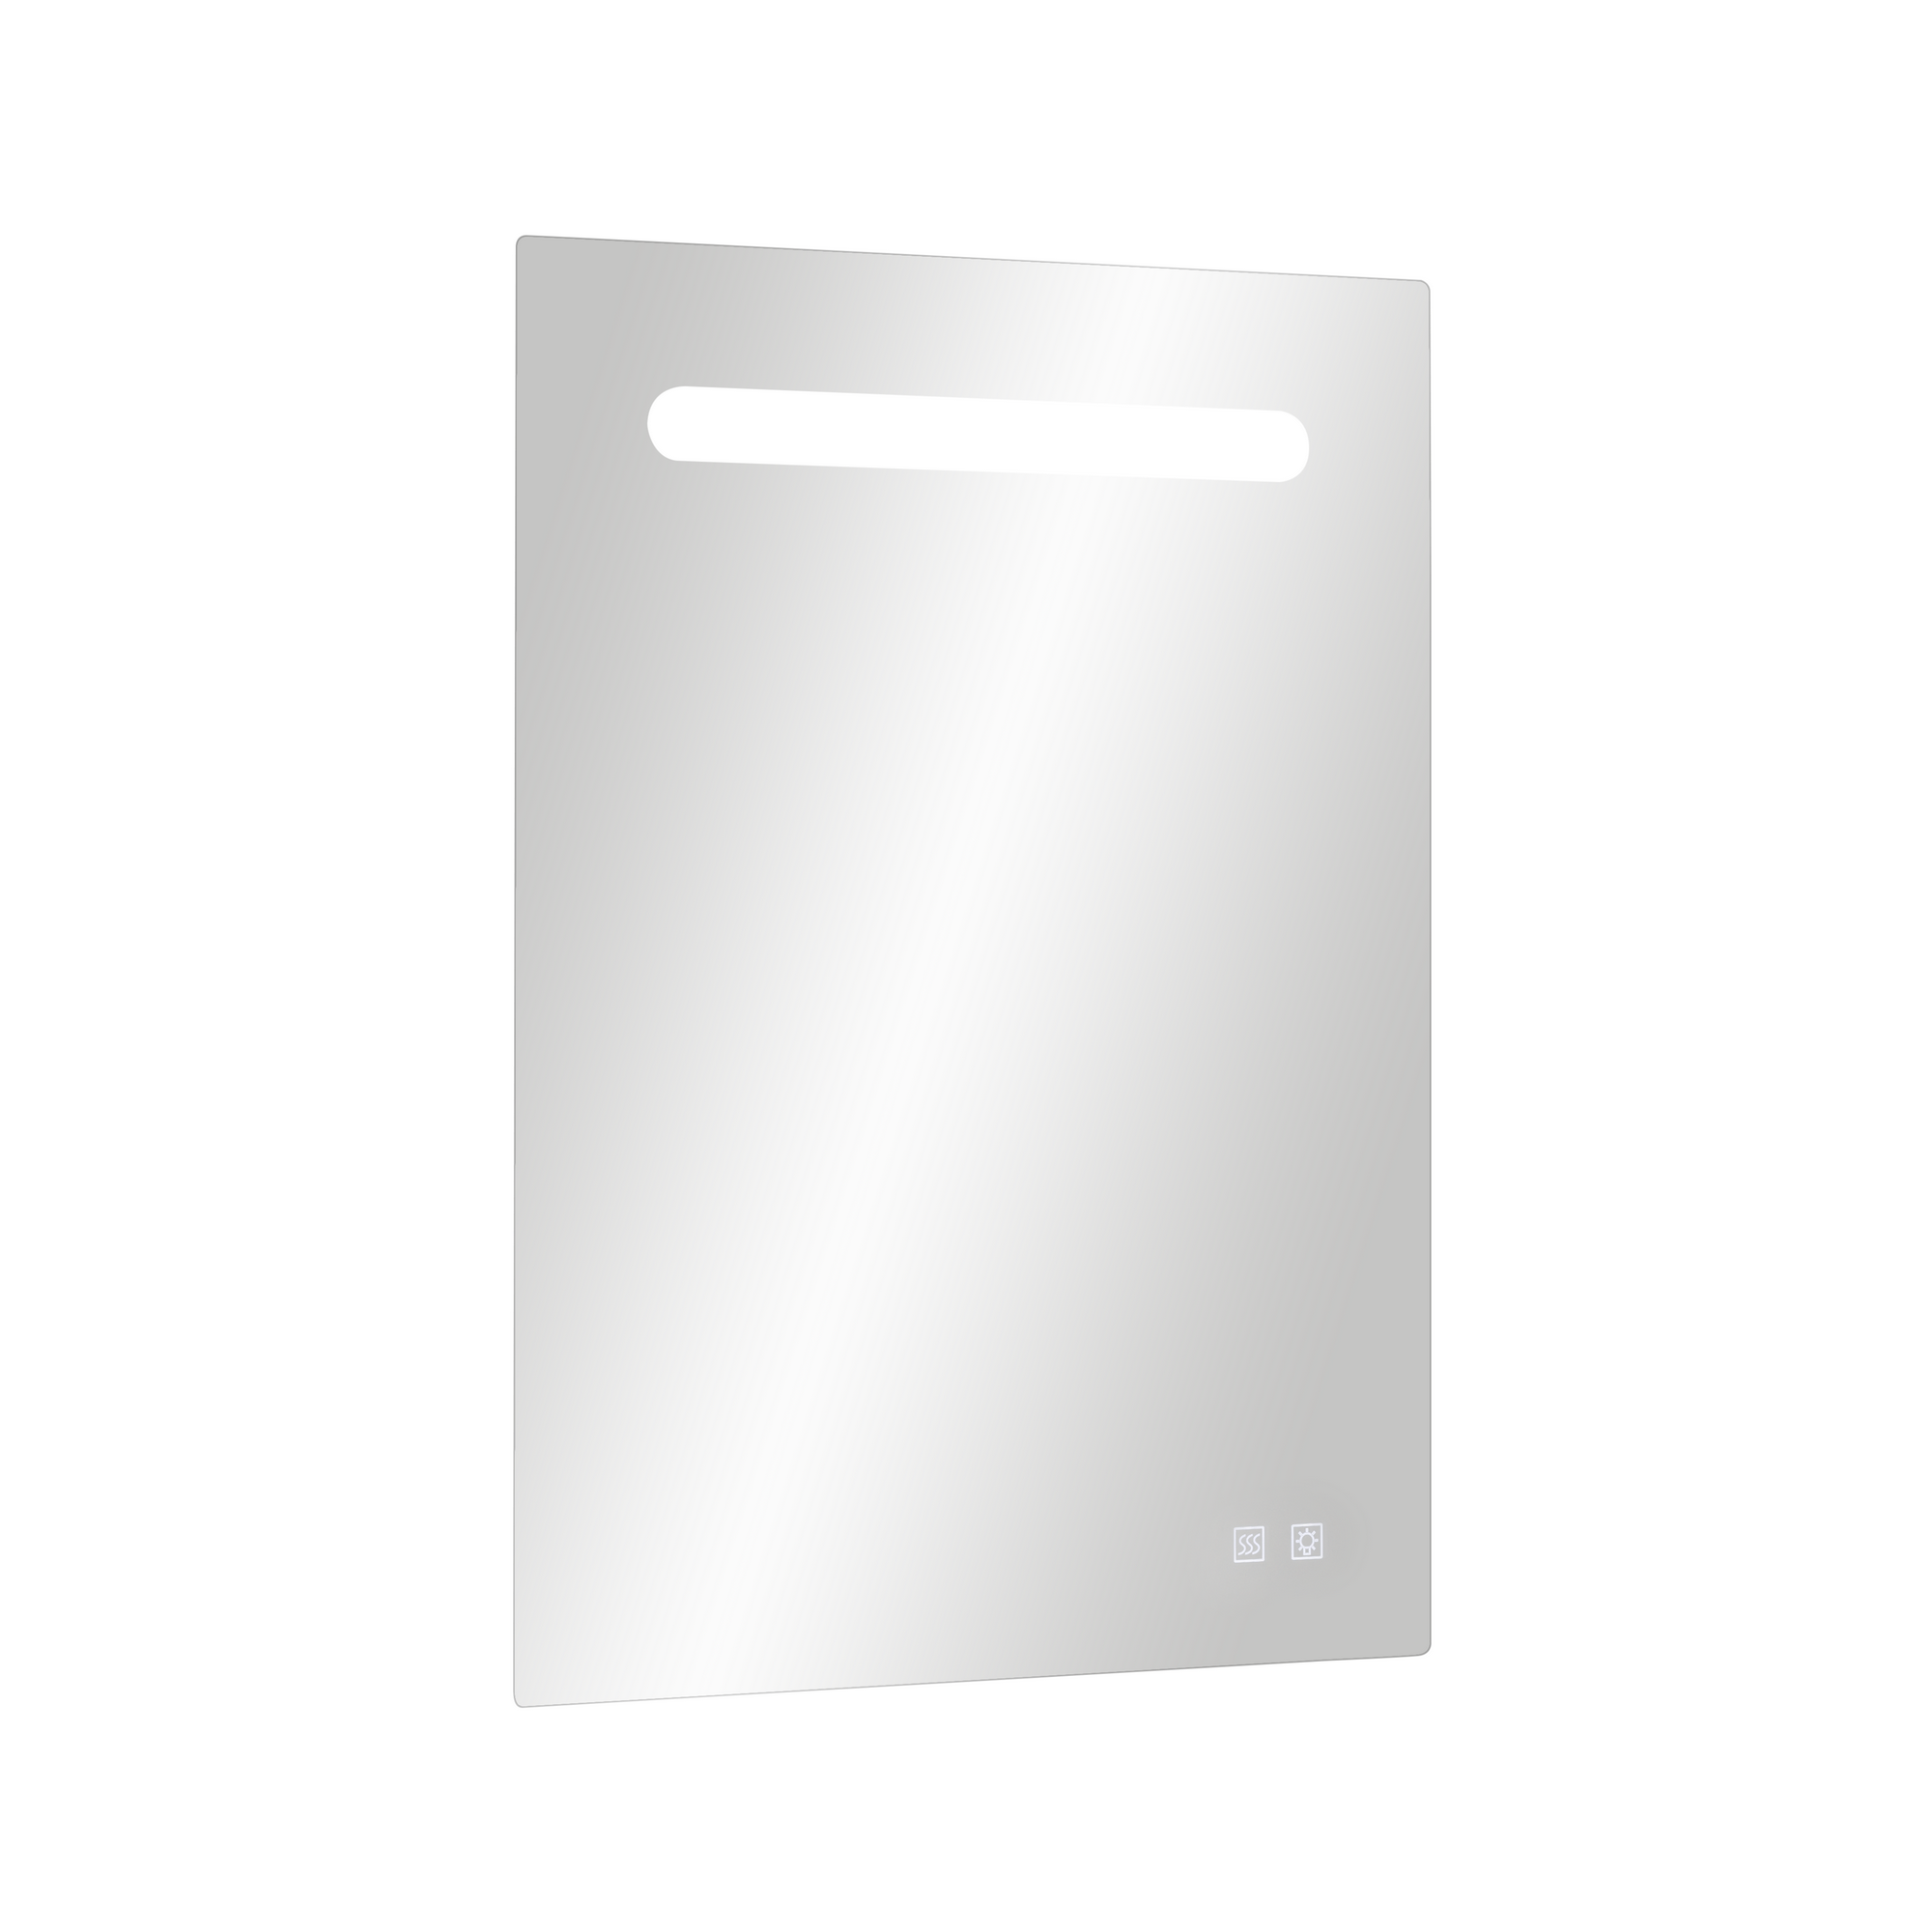 LED-Spiegel 'Tao' mit USB-Anschluss und Heizung, 60 x 80 cm + product picture